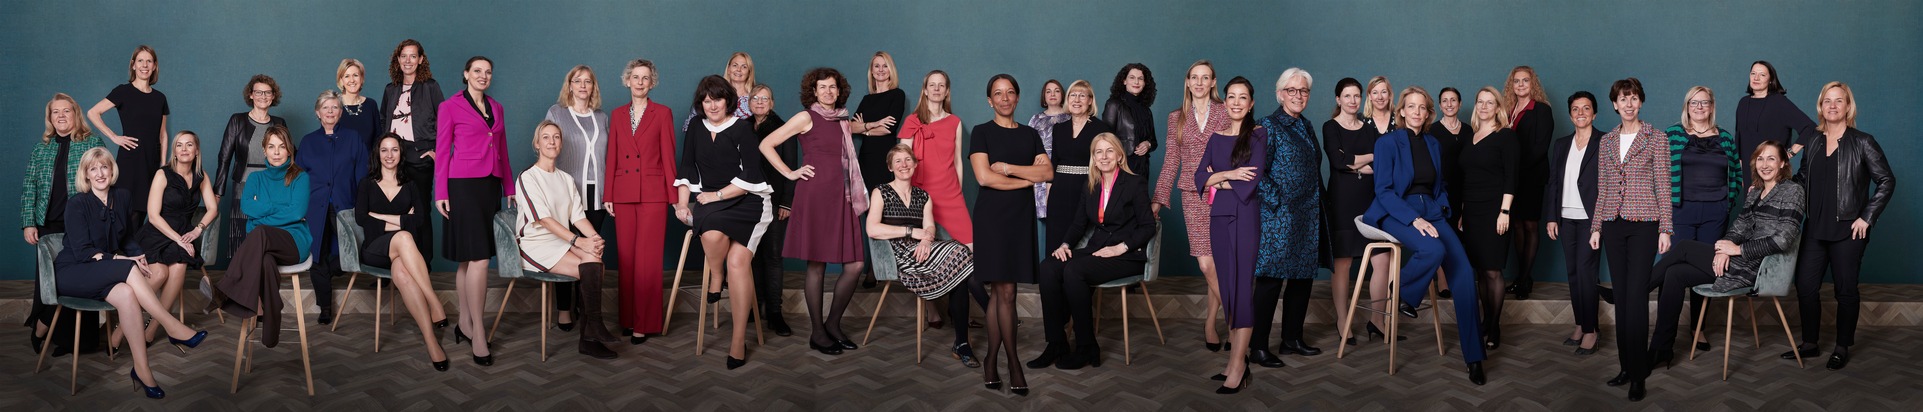 Boston Consulting Group: Weibliche Wirtschaftsmacht auf einen Blick